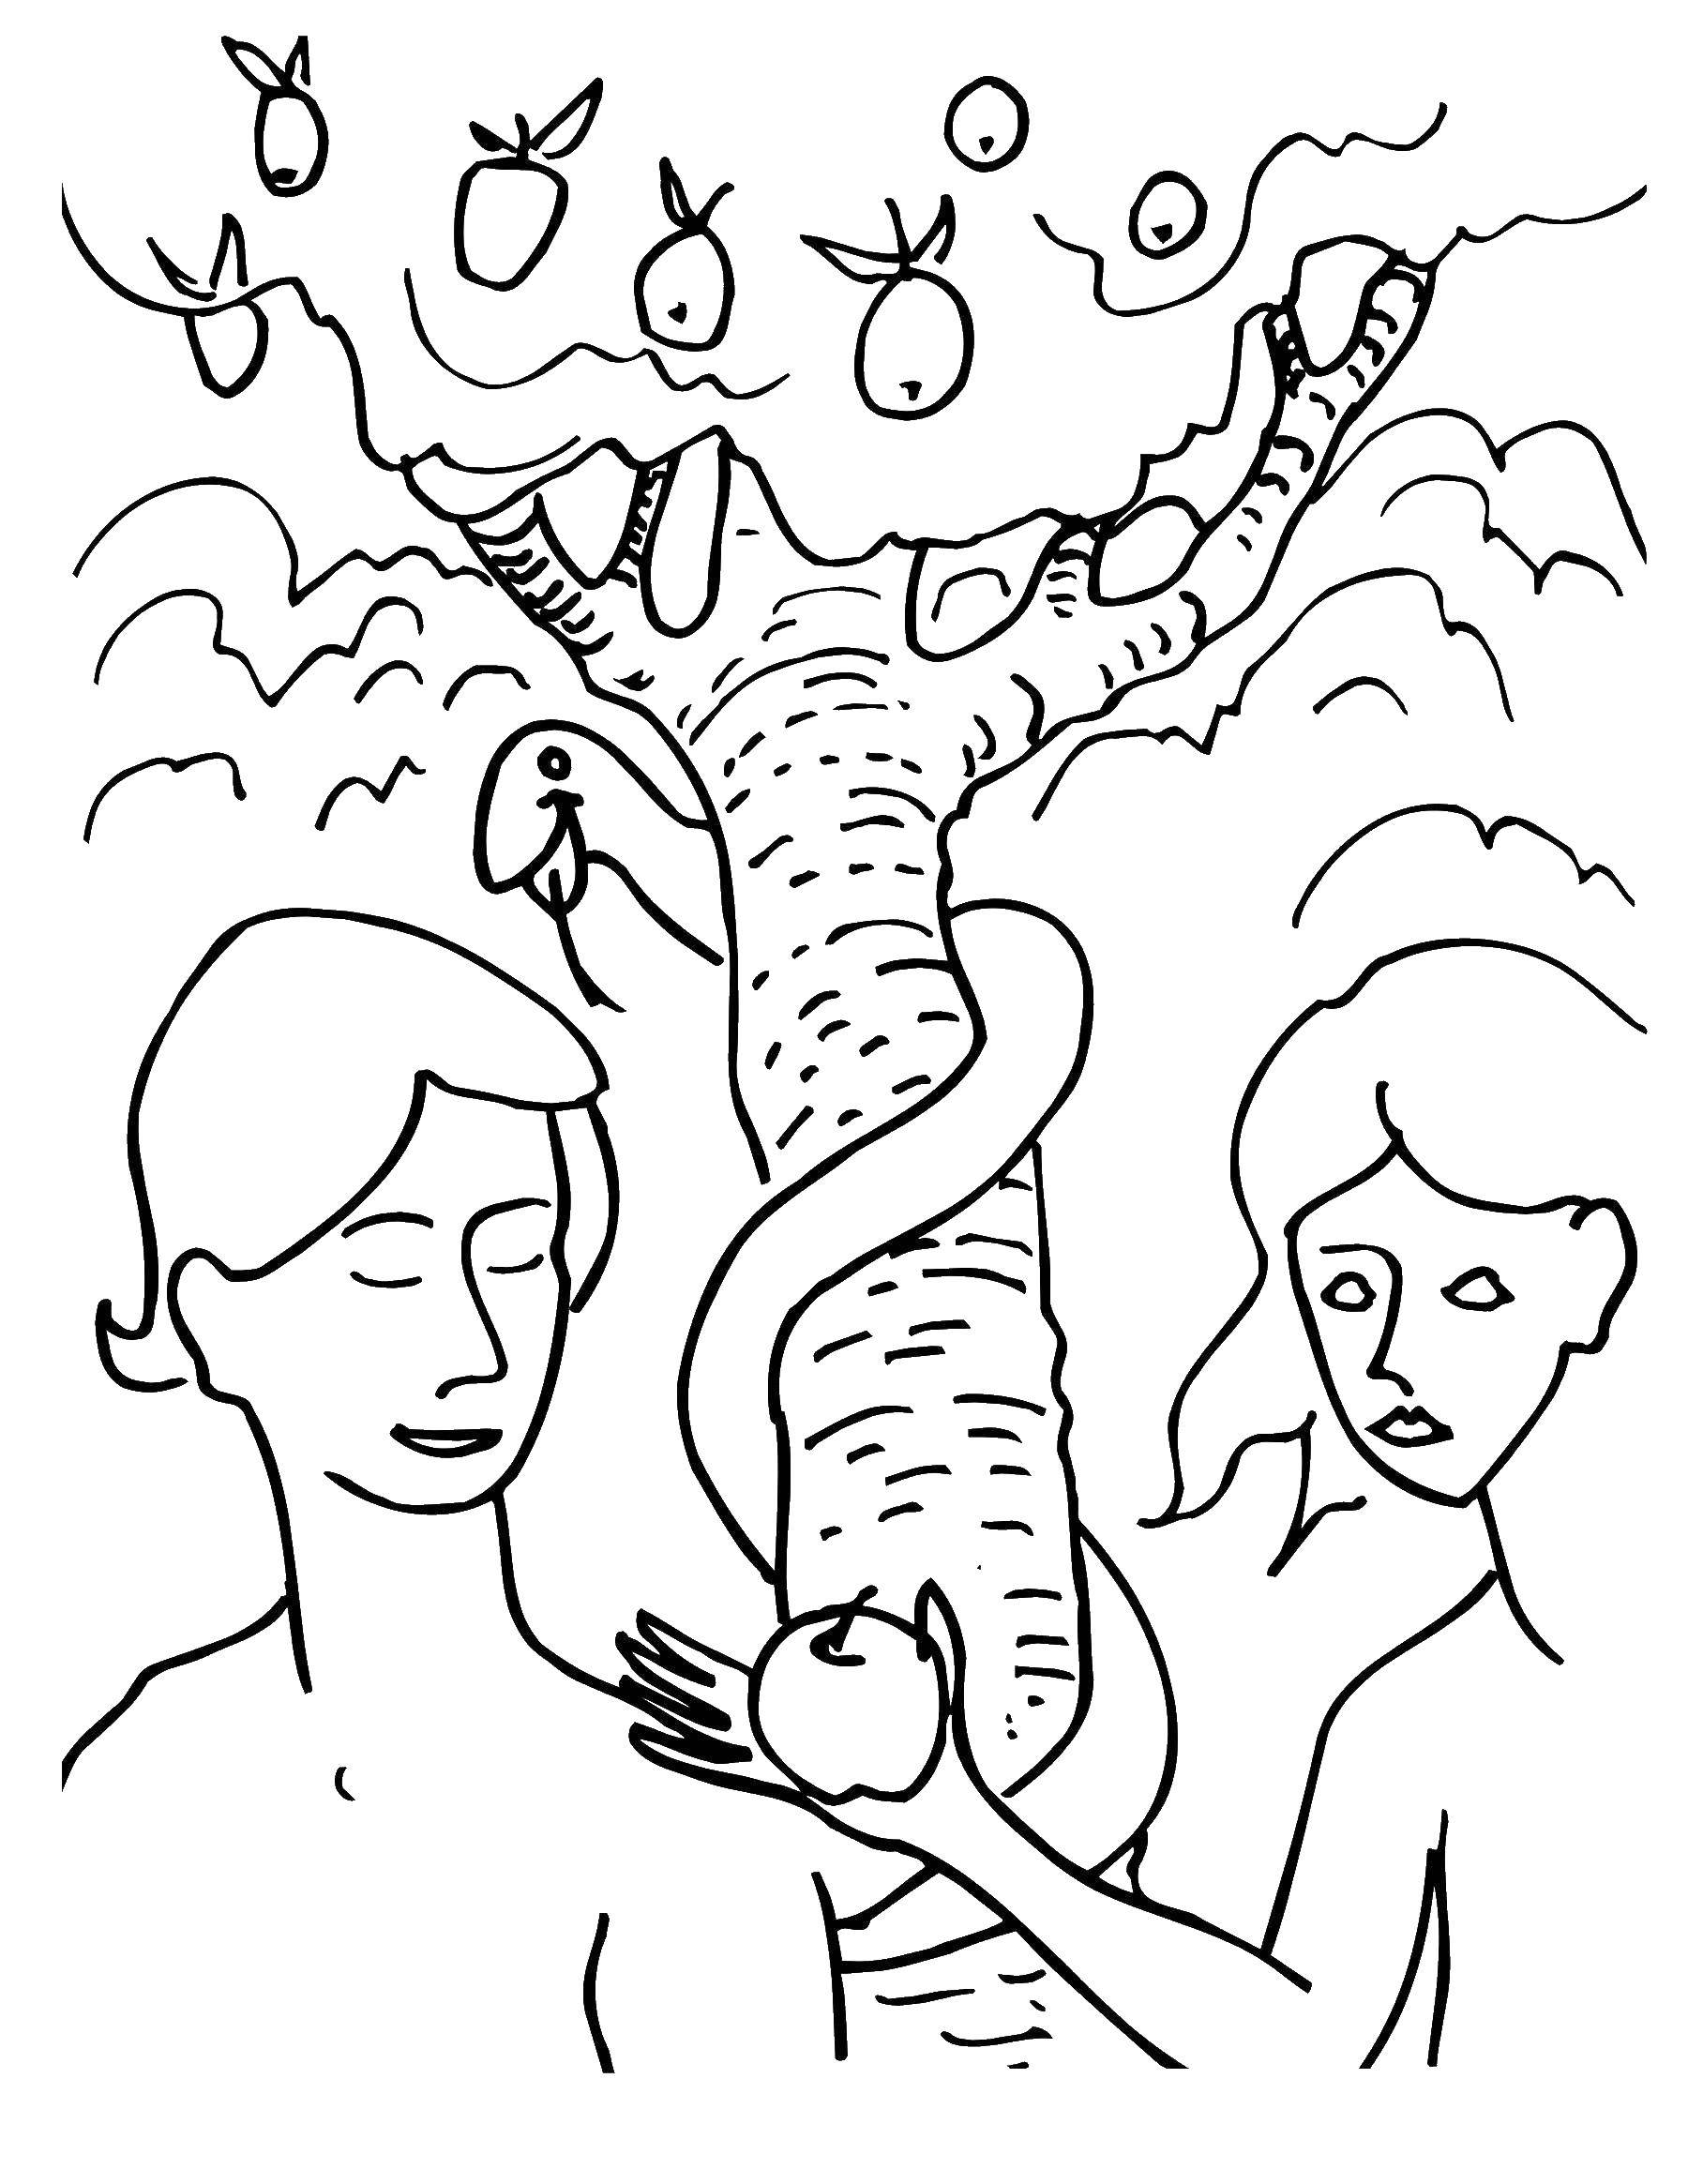 Опис: розмальовки  Адам і єва у забороненого плоду. Категорія: адам і єва. Теги:  адам, єва, світ, земля.